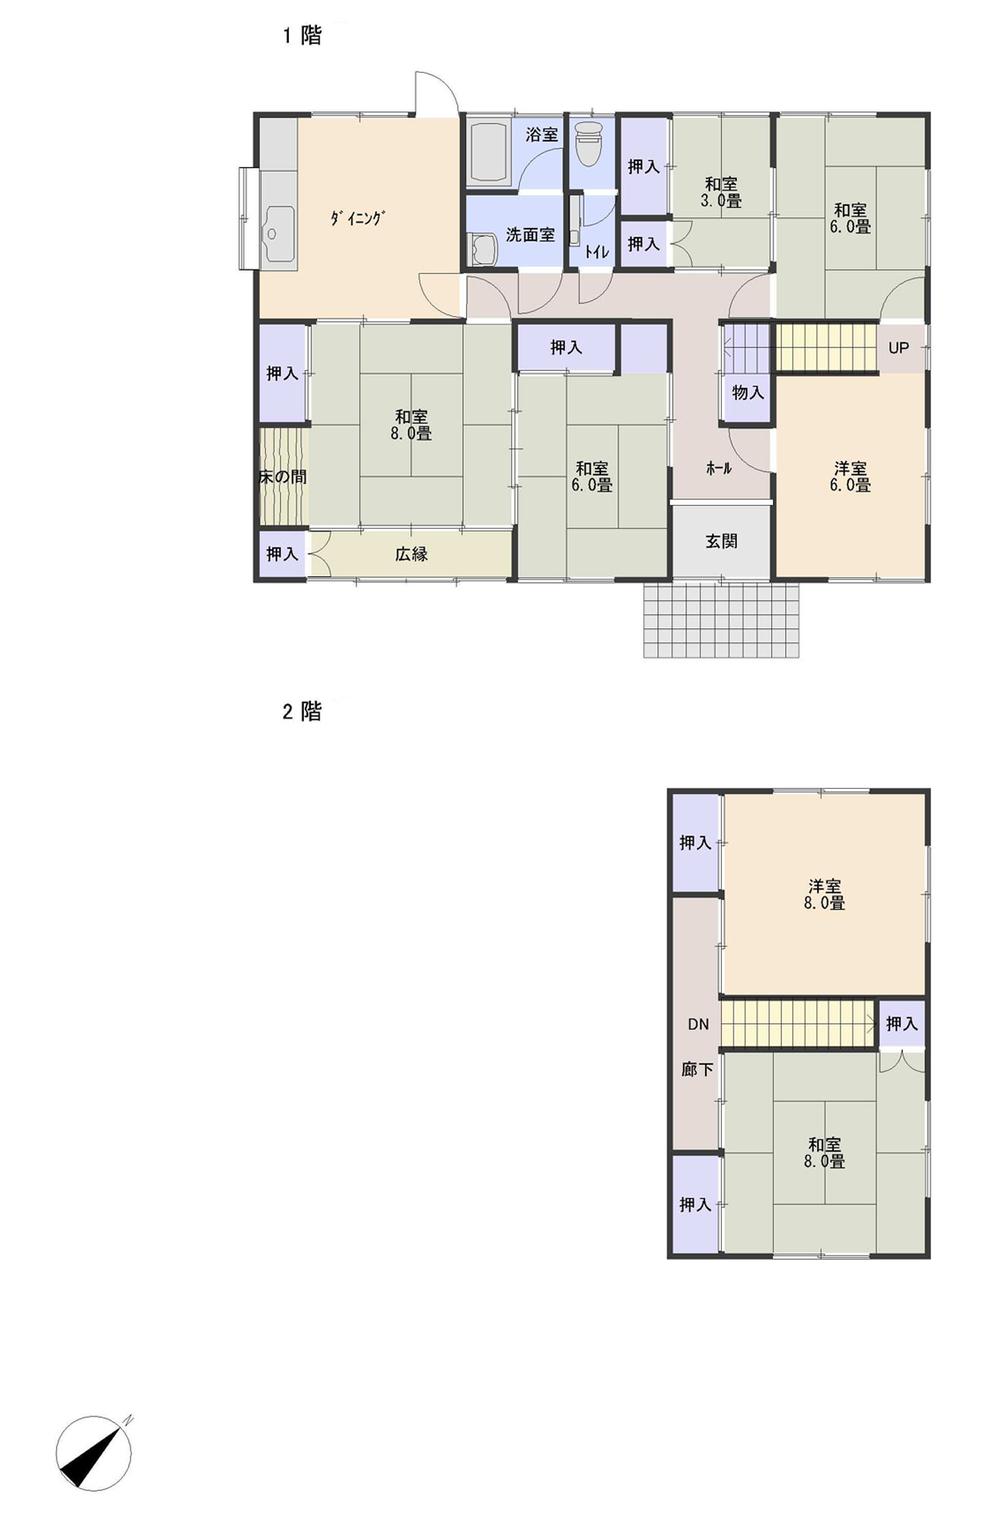 Floor plan. 18 million yen, 7DK, Land area 406.73 sq m , Building area 147.75 sq m